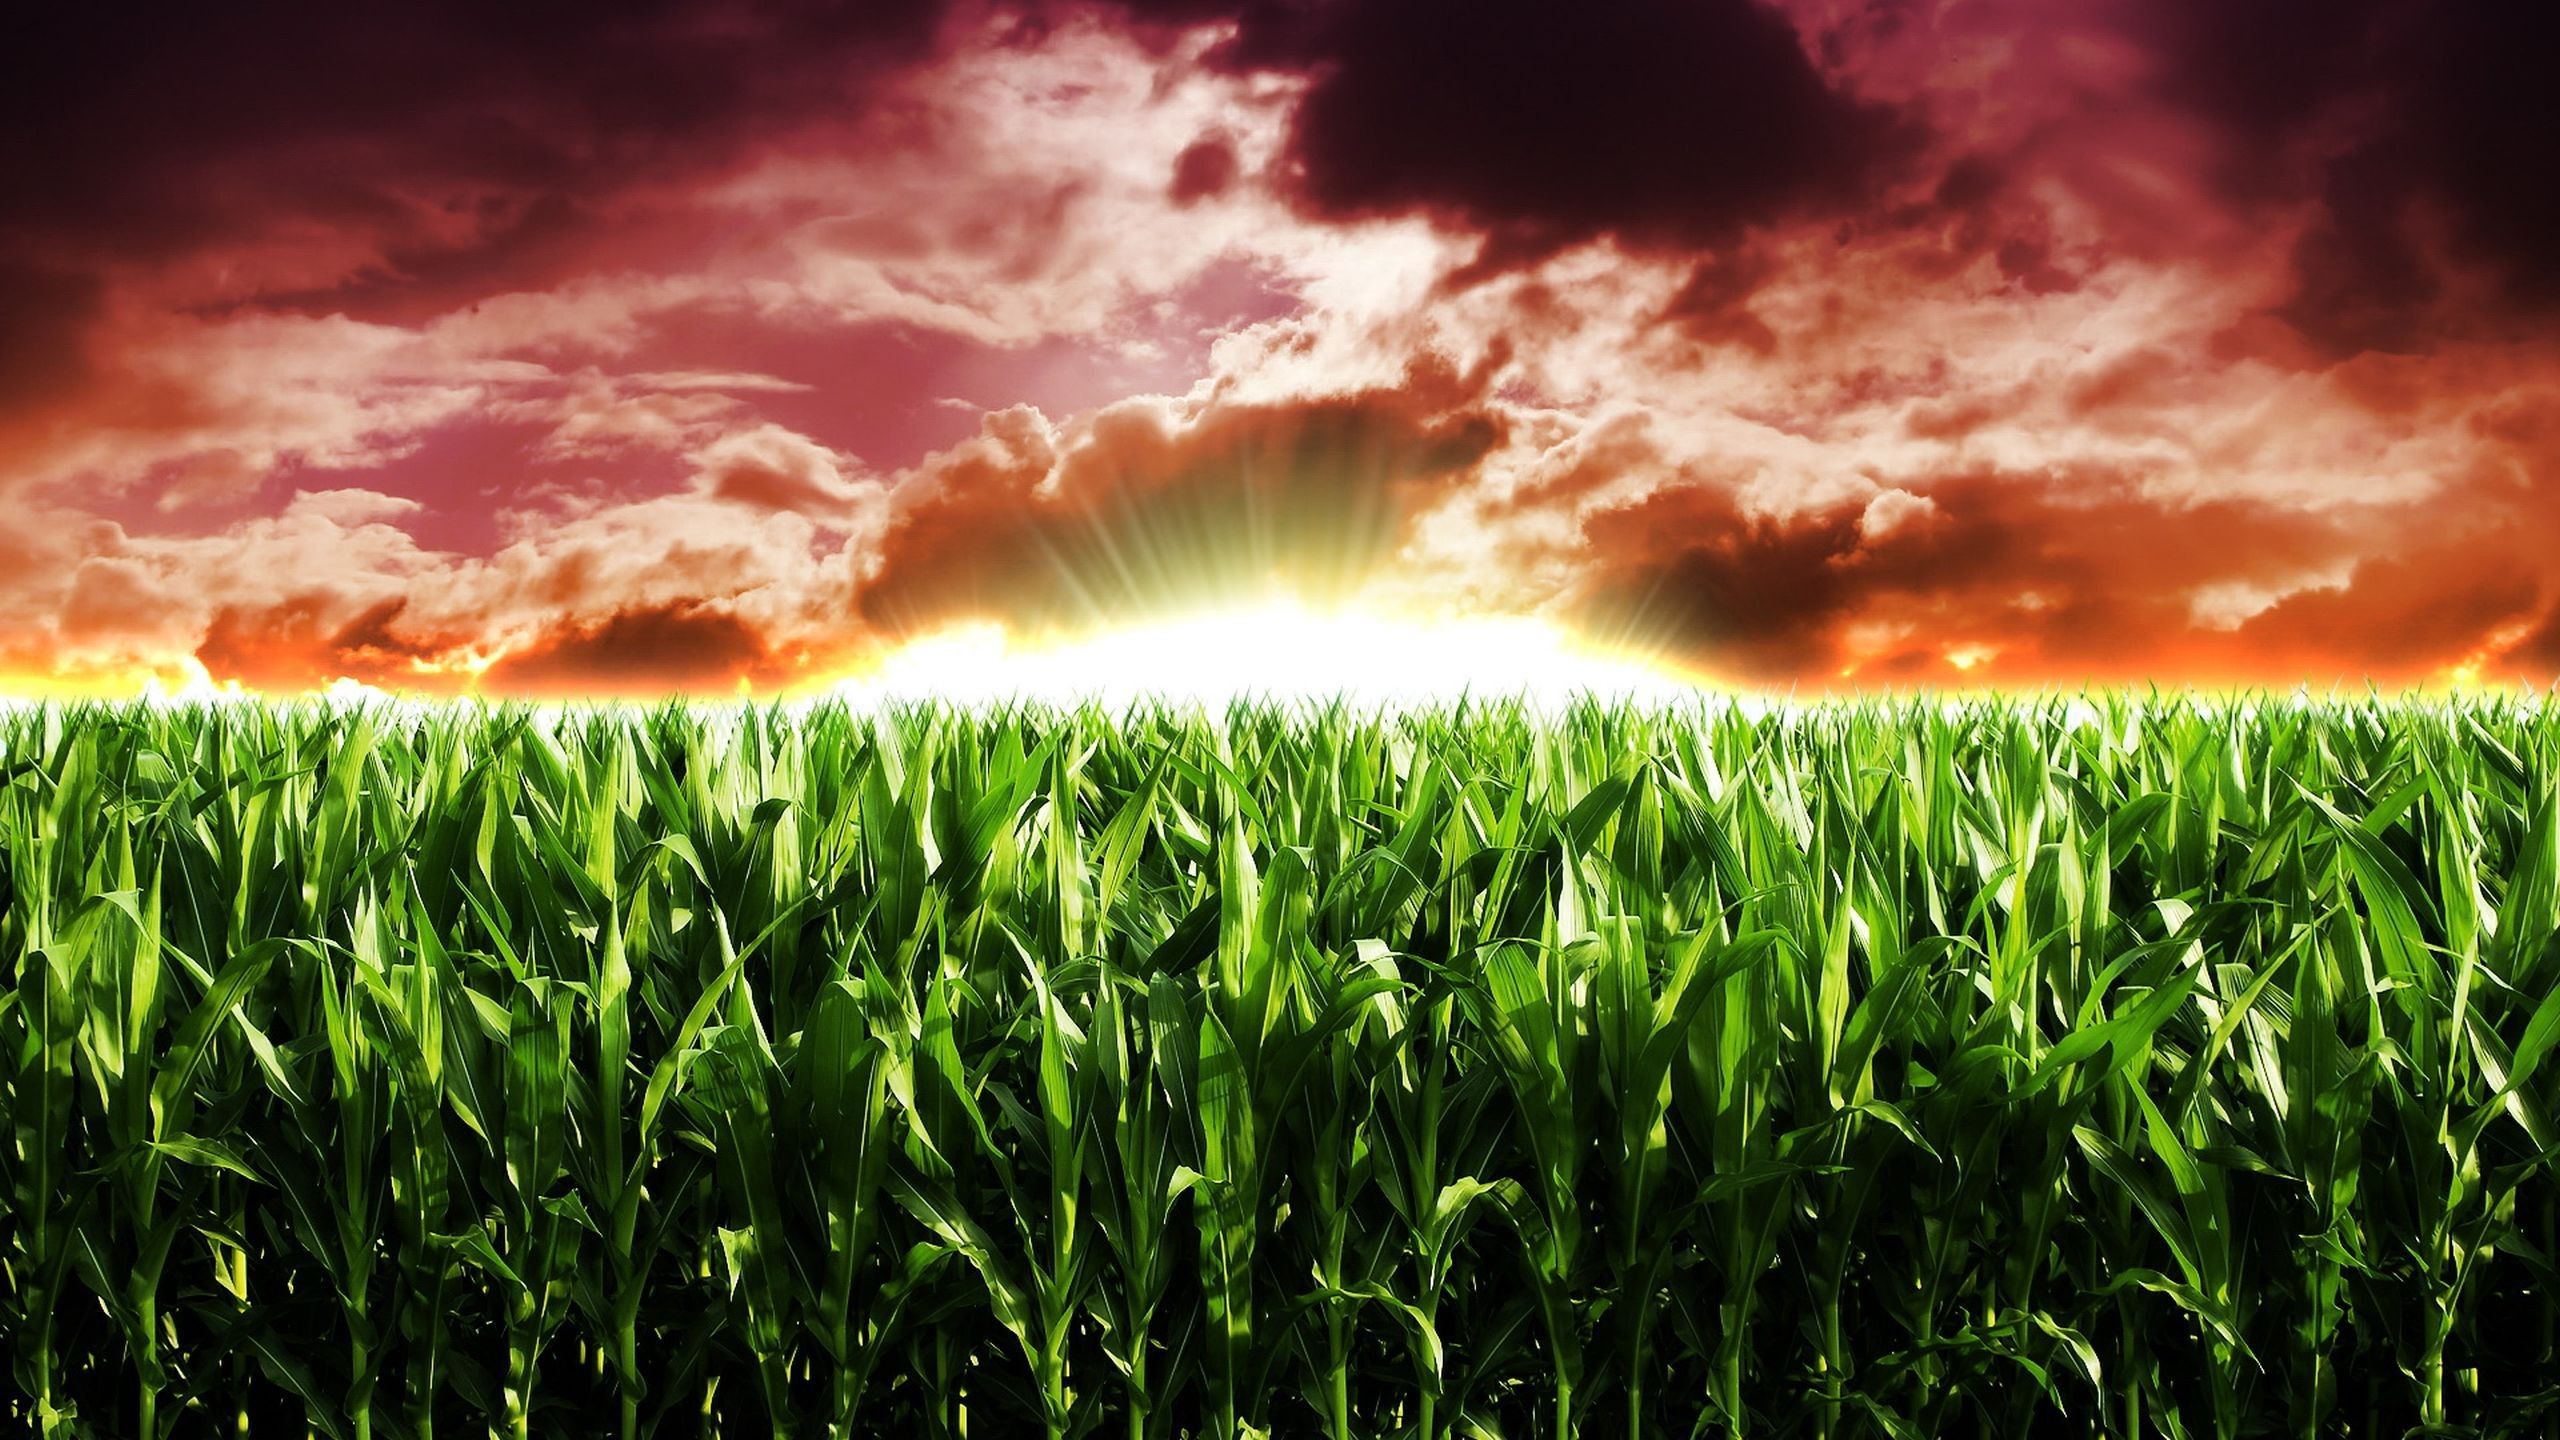 Sunset in the corn field Desktop wallpaper 1920x1080